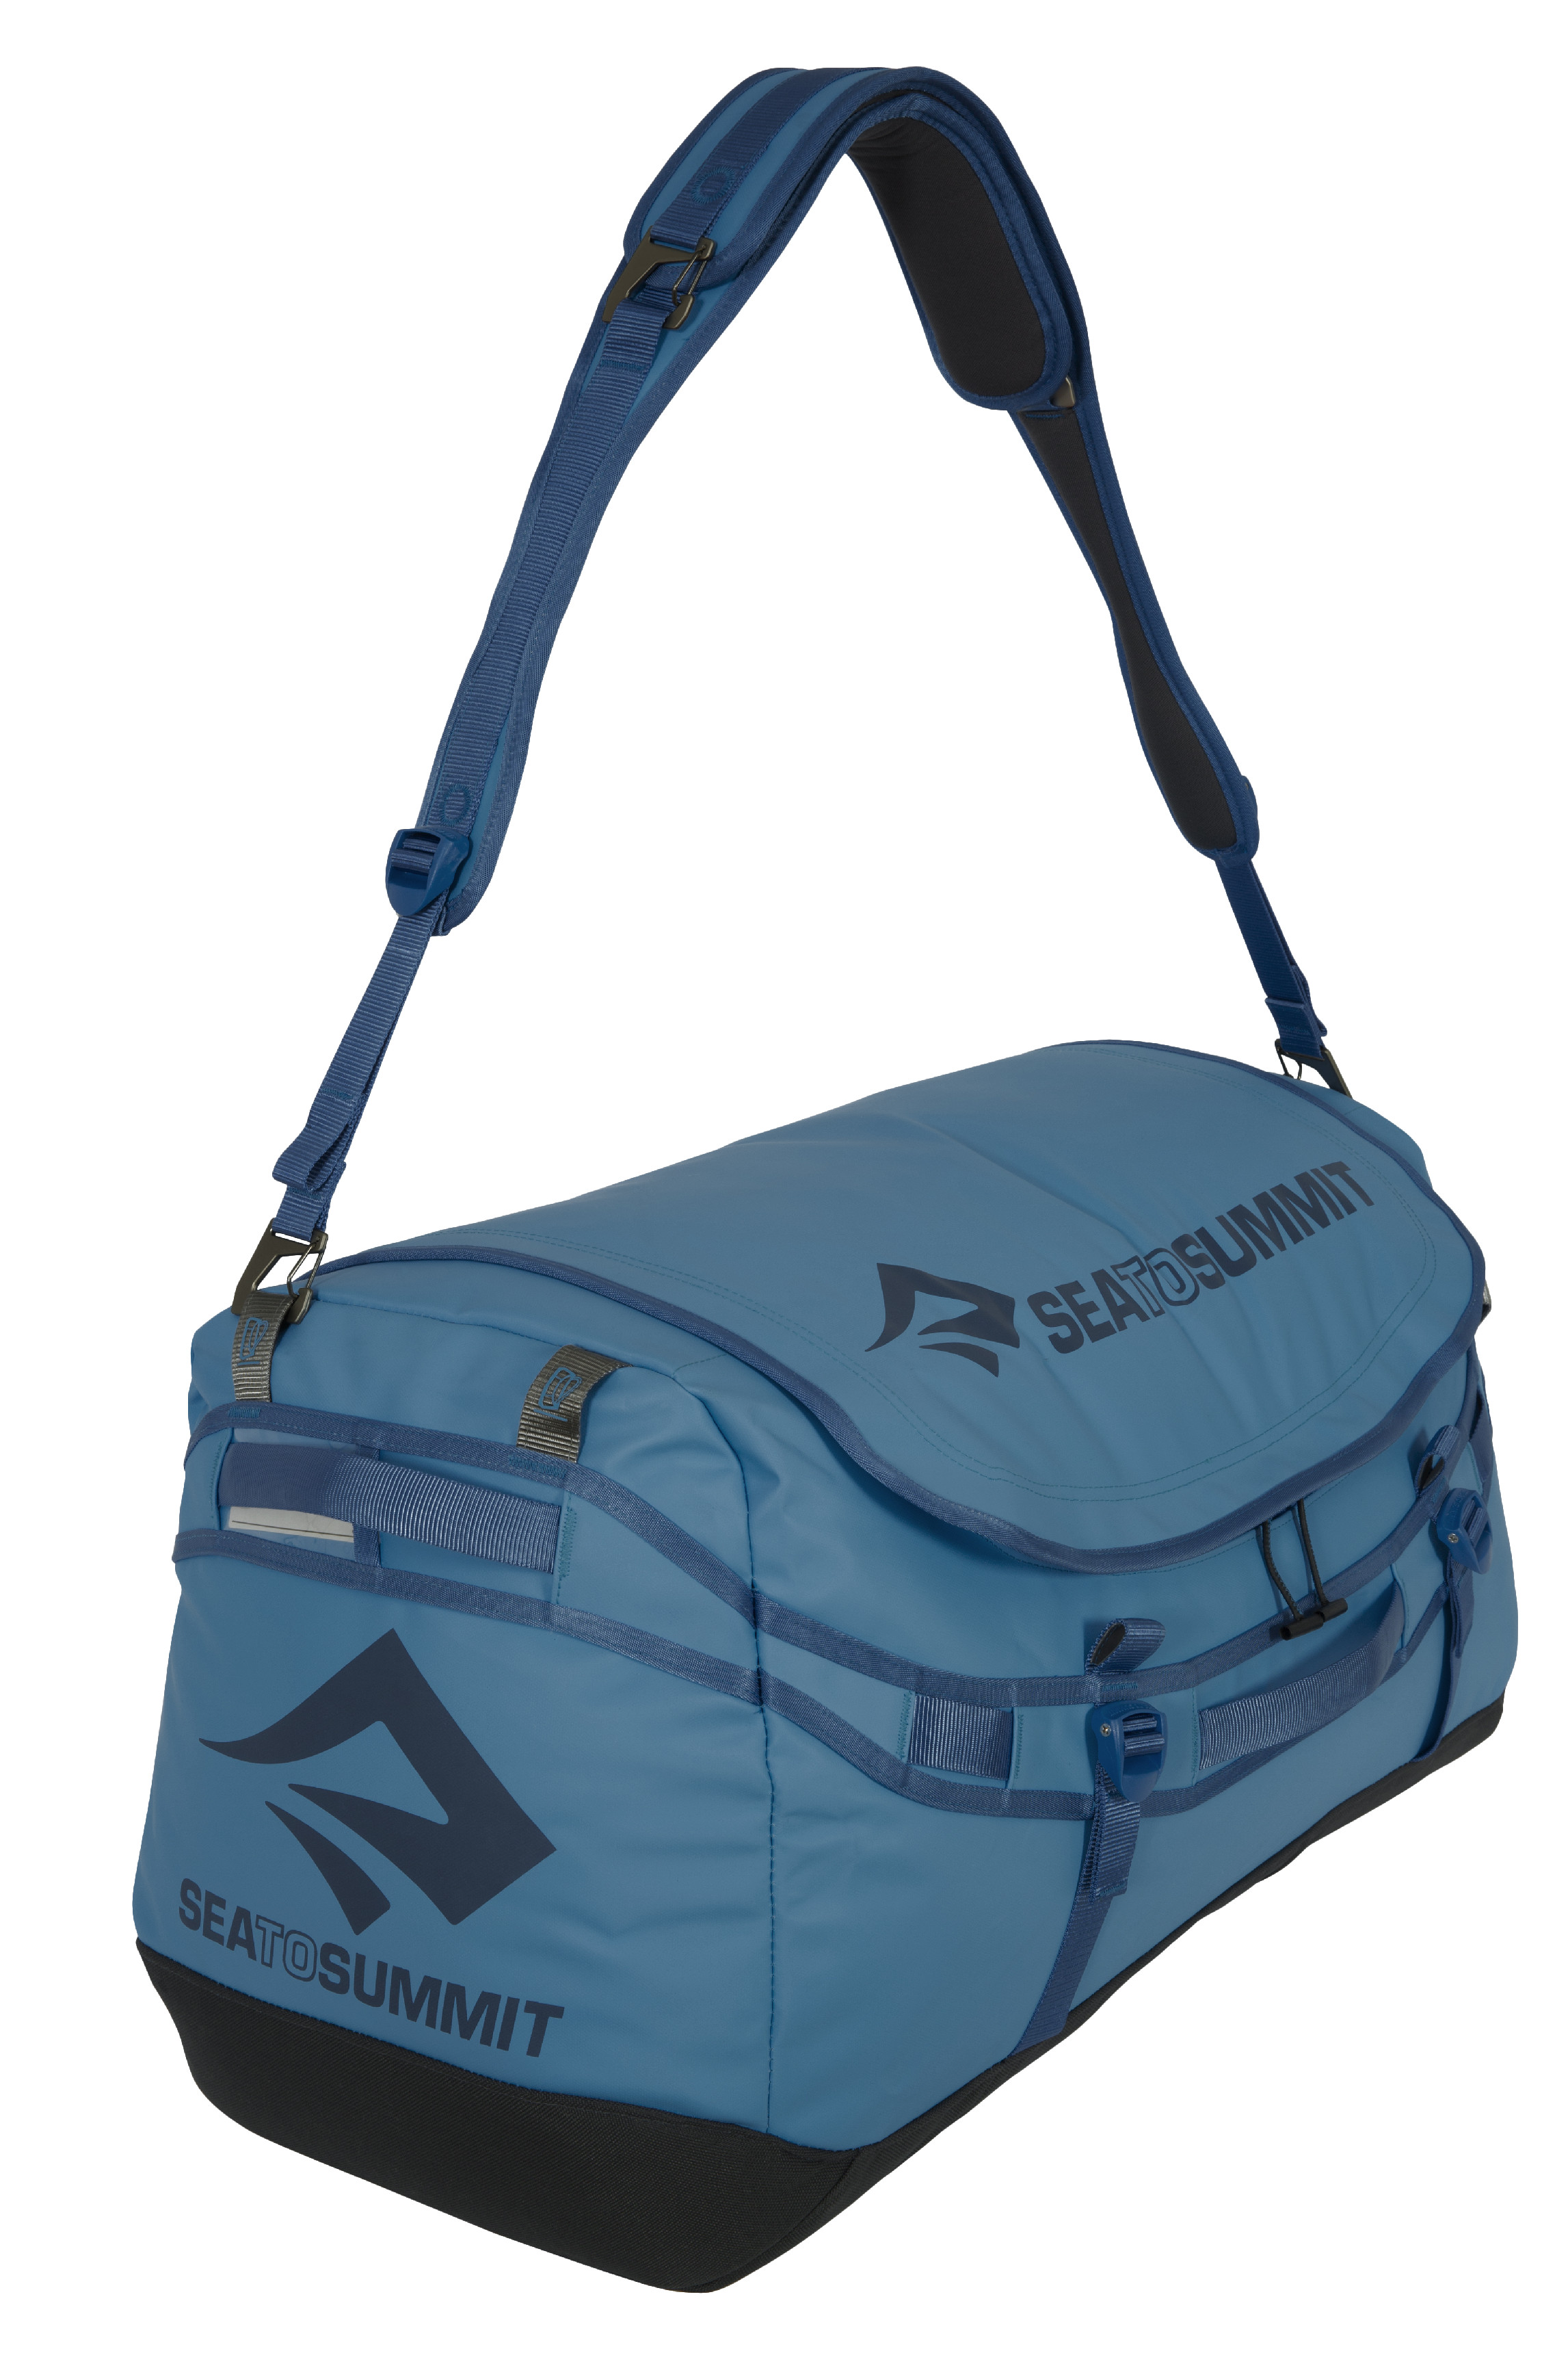 Cestovní taška Sea to Summit Duffle velikost: 90 litrů, barva: tmavě modrá